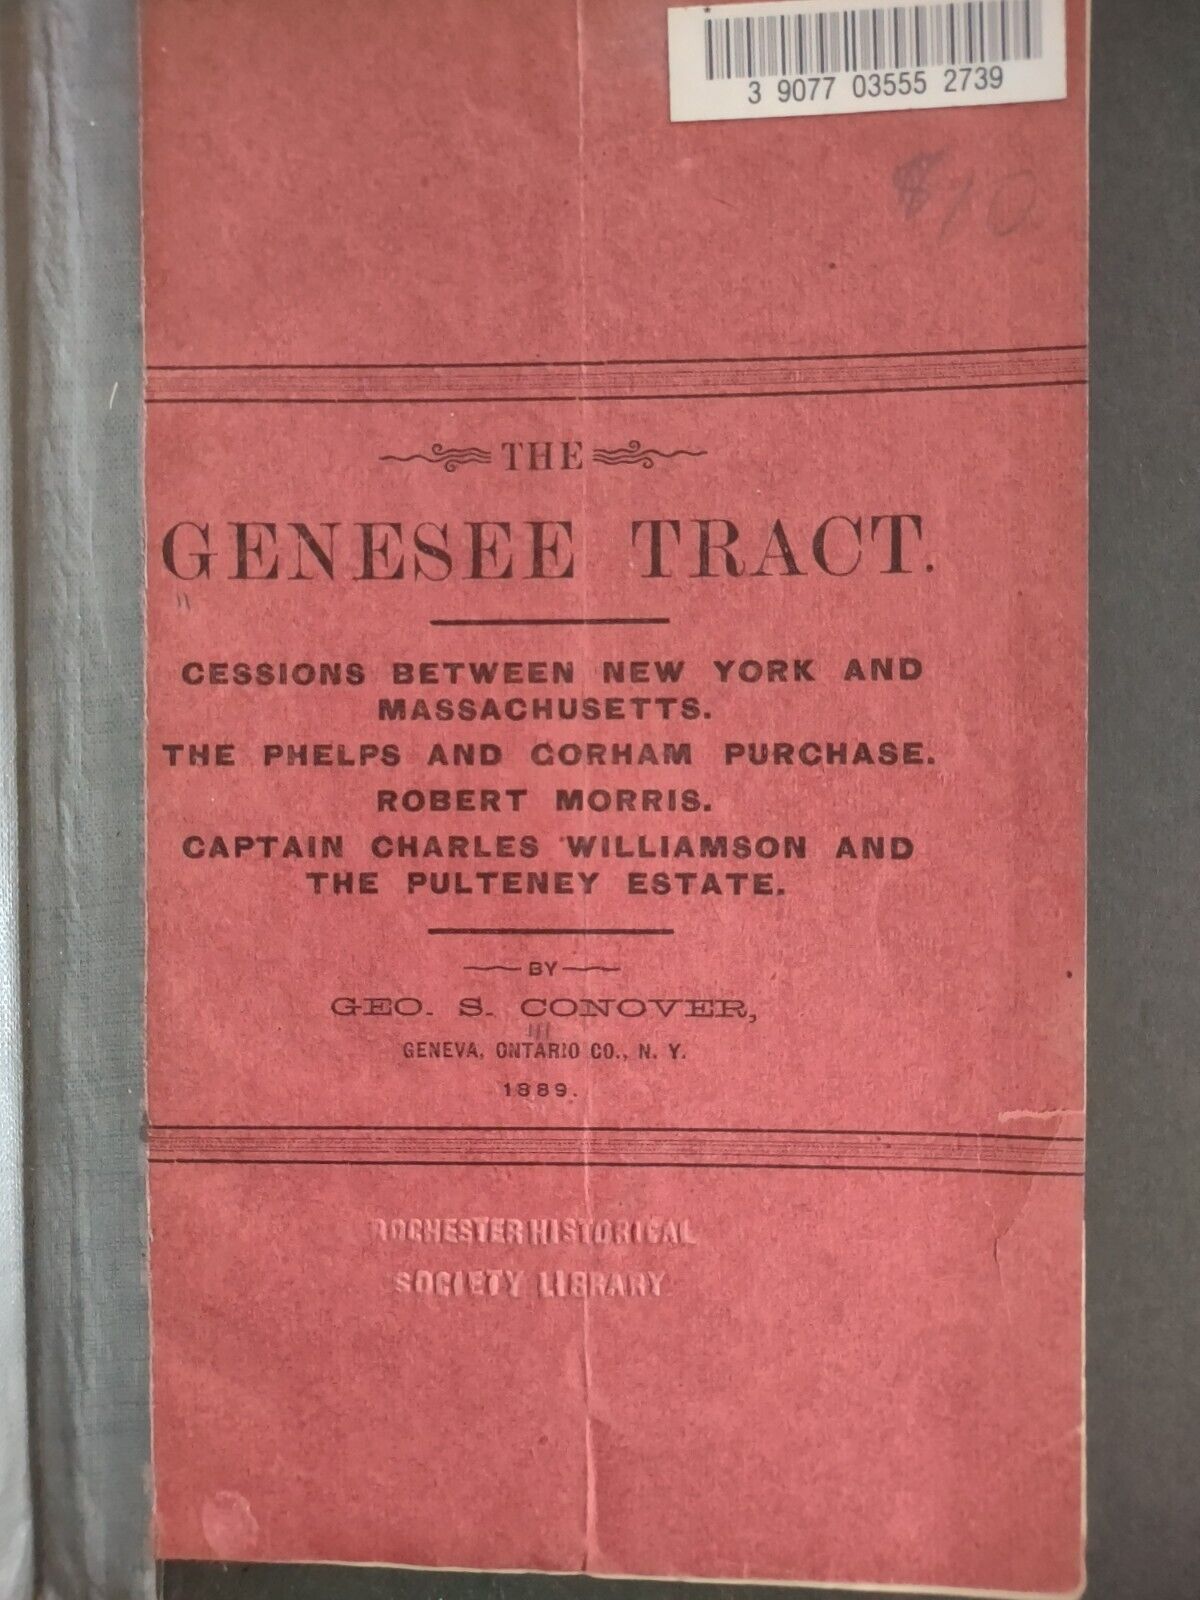 Genesee Tract Cessions Between NY and Massachusetts 1889 Geo Conover Geneva NY